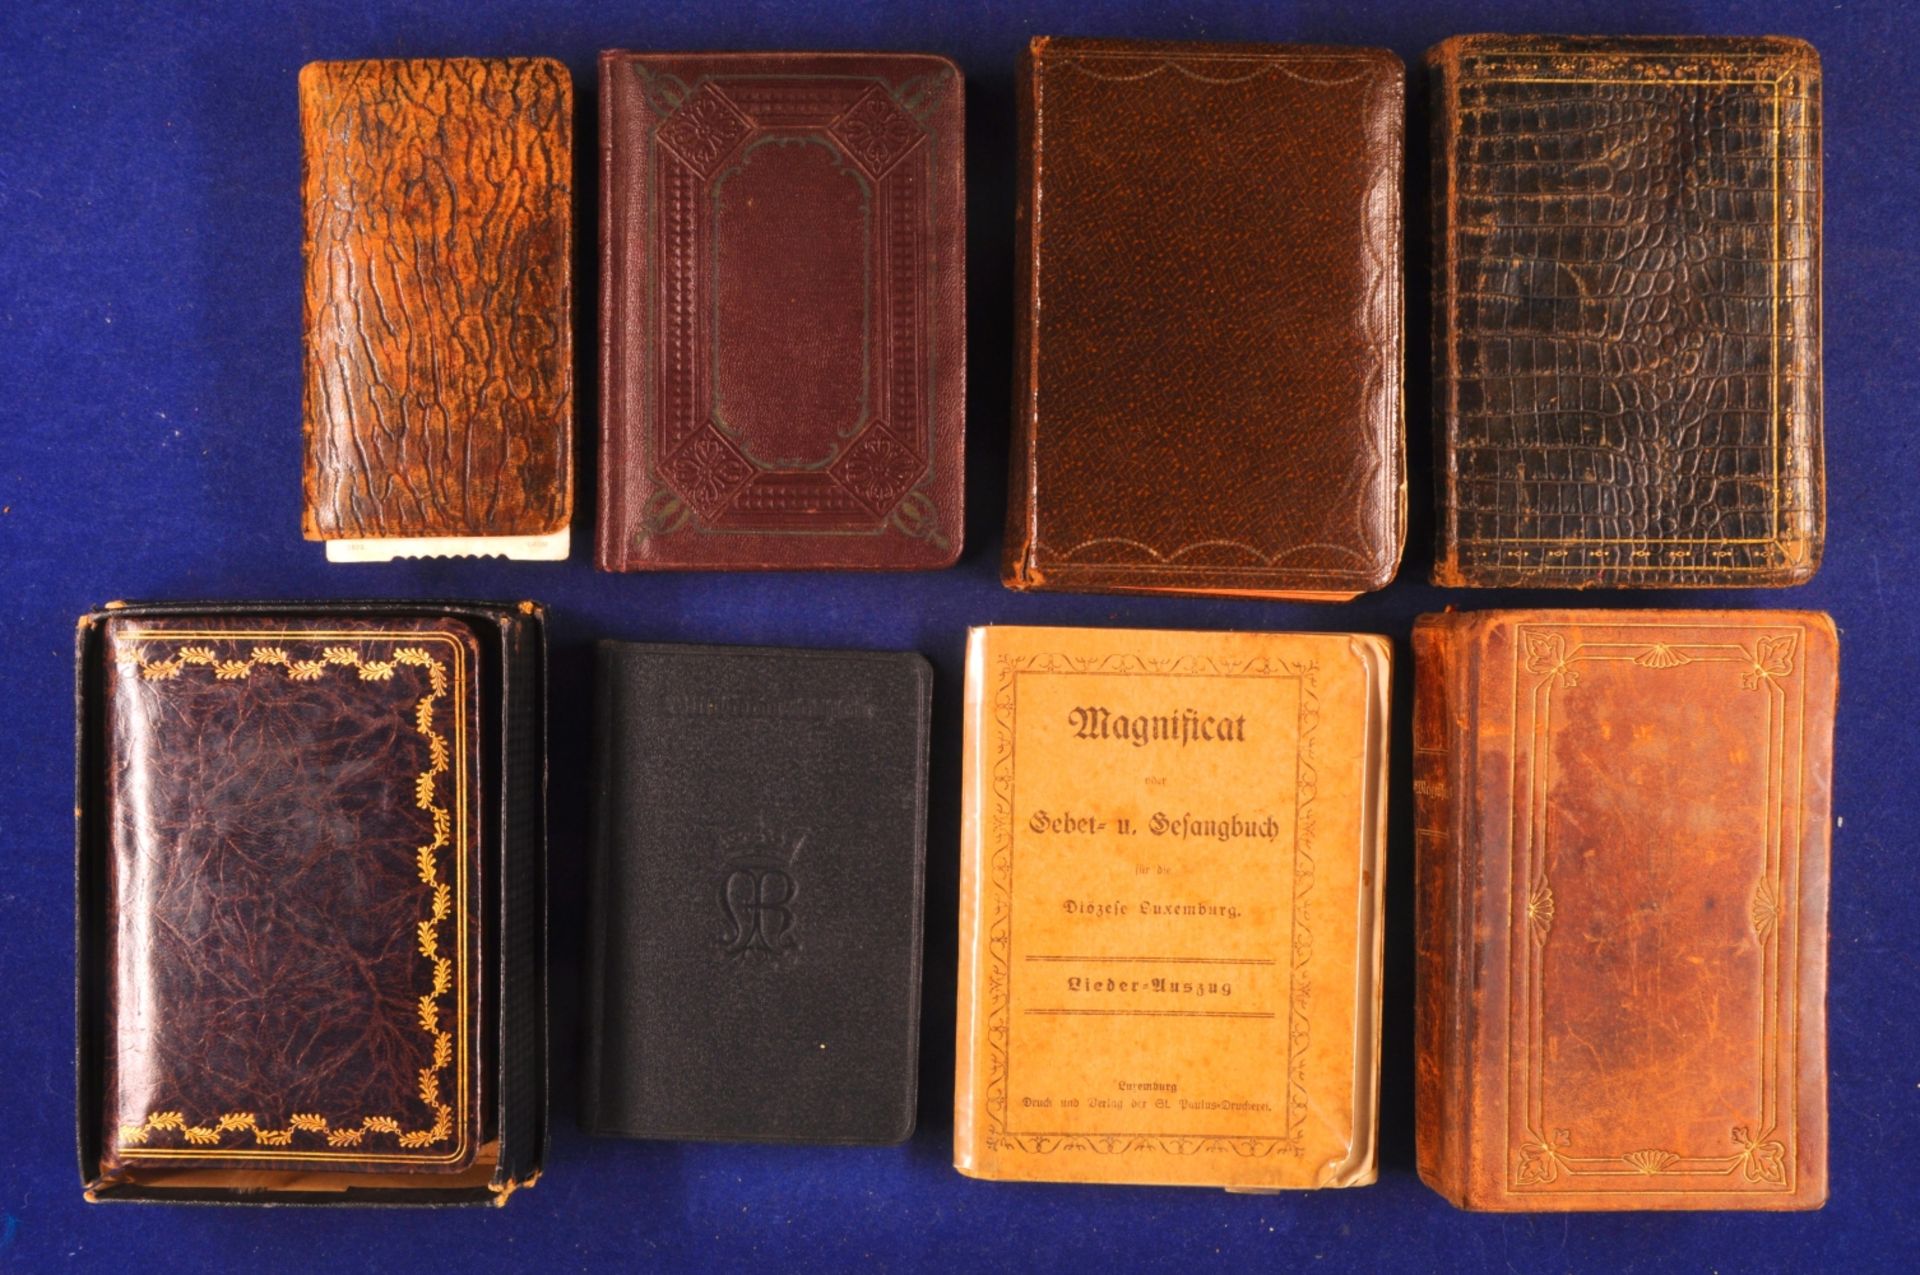 Literatur, Religion, 8 historische Gebetsbücher, ca. 19. und Anfang 20. Jahrhundert, teilweise stock